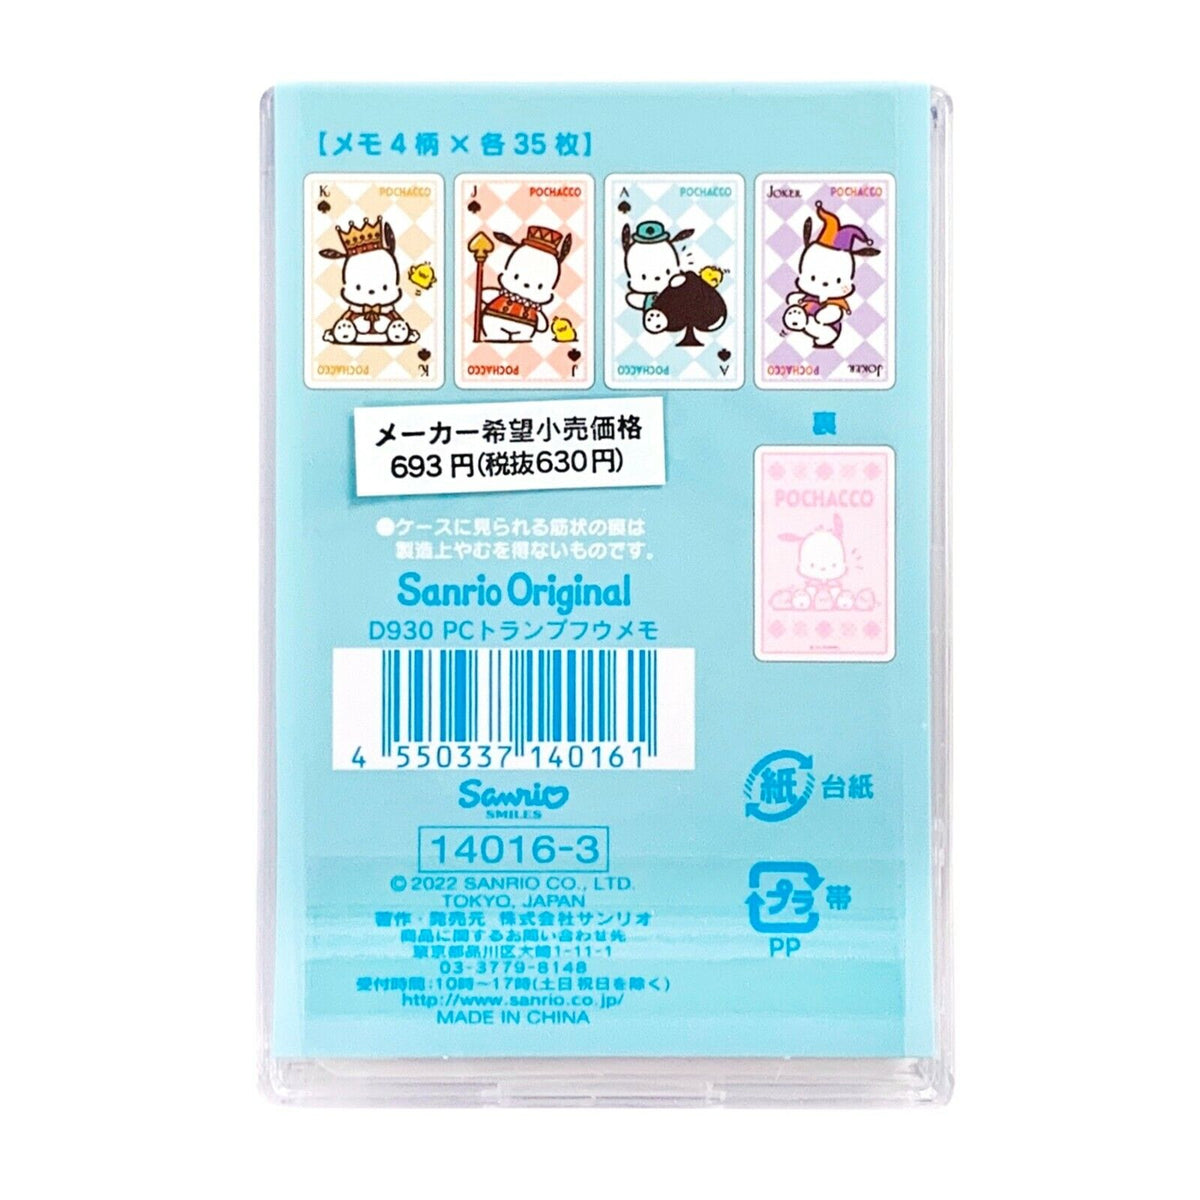 Sanrio Kuromi Die Cut Mini Memo Pad / Made in Japan 2022